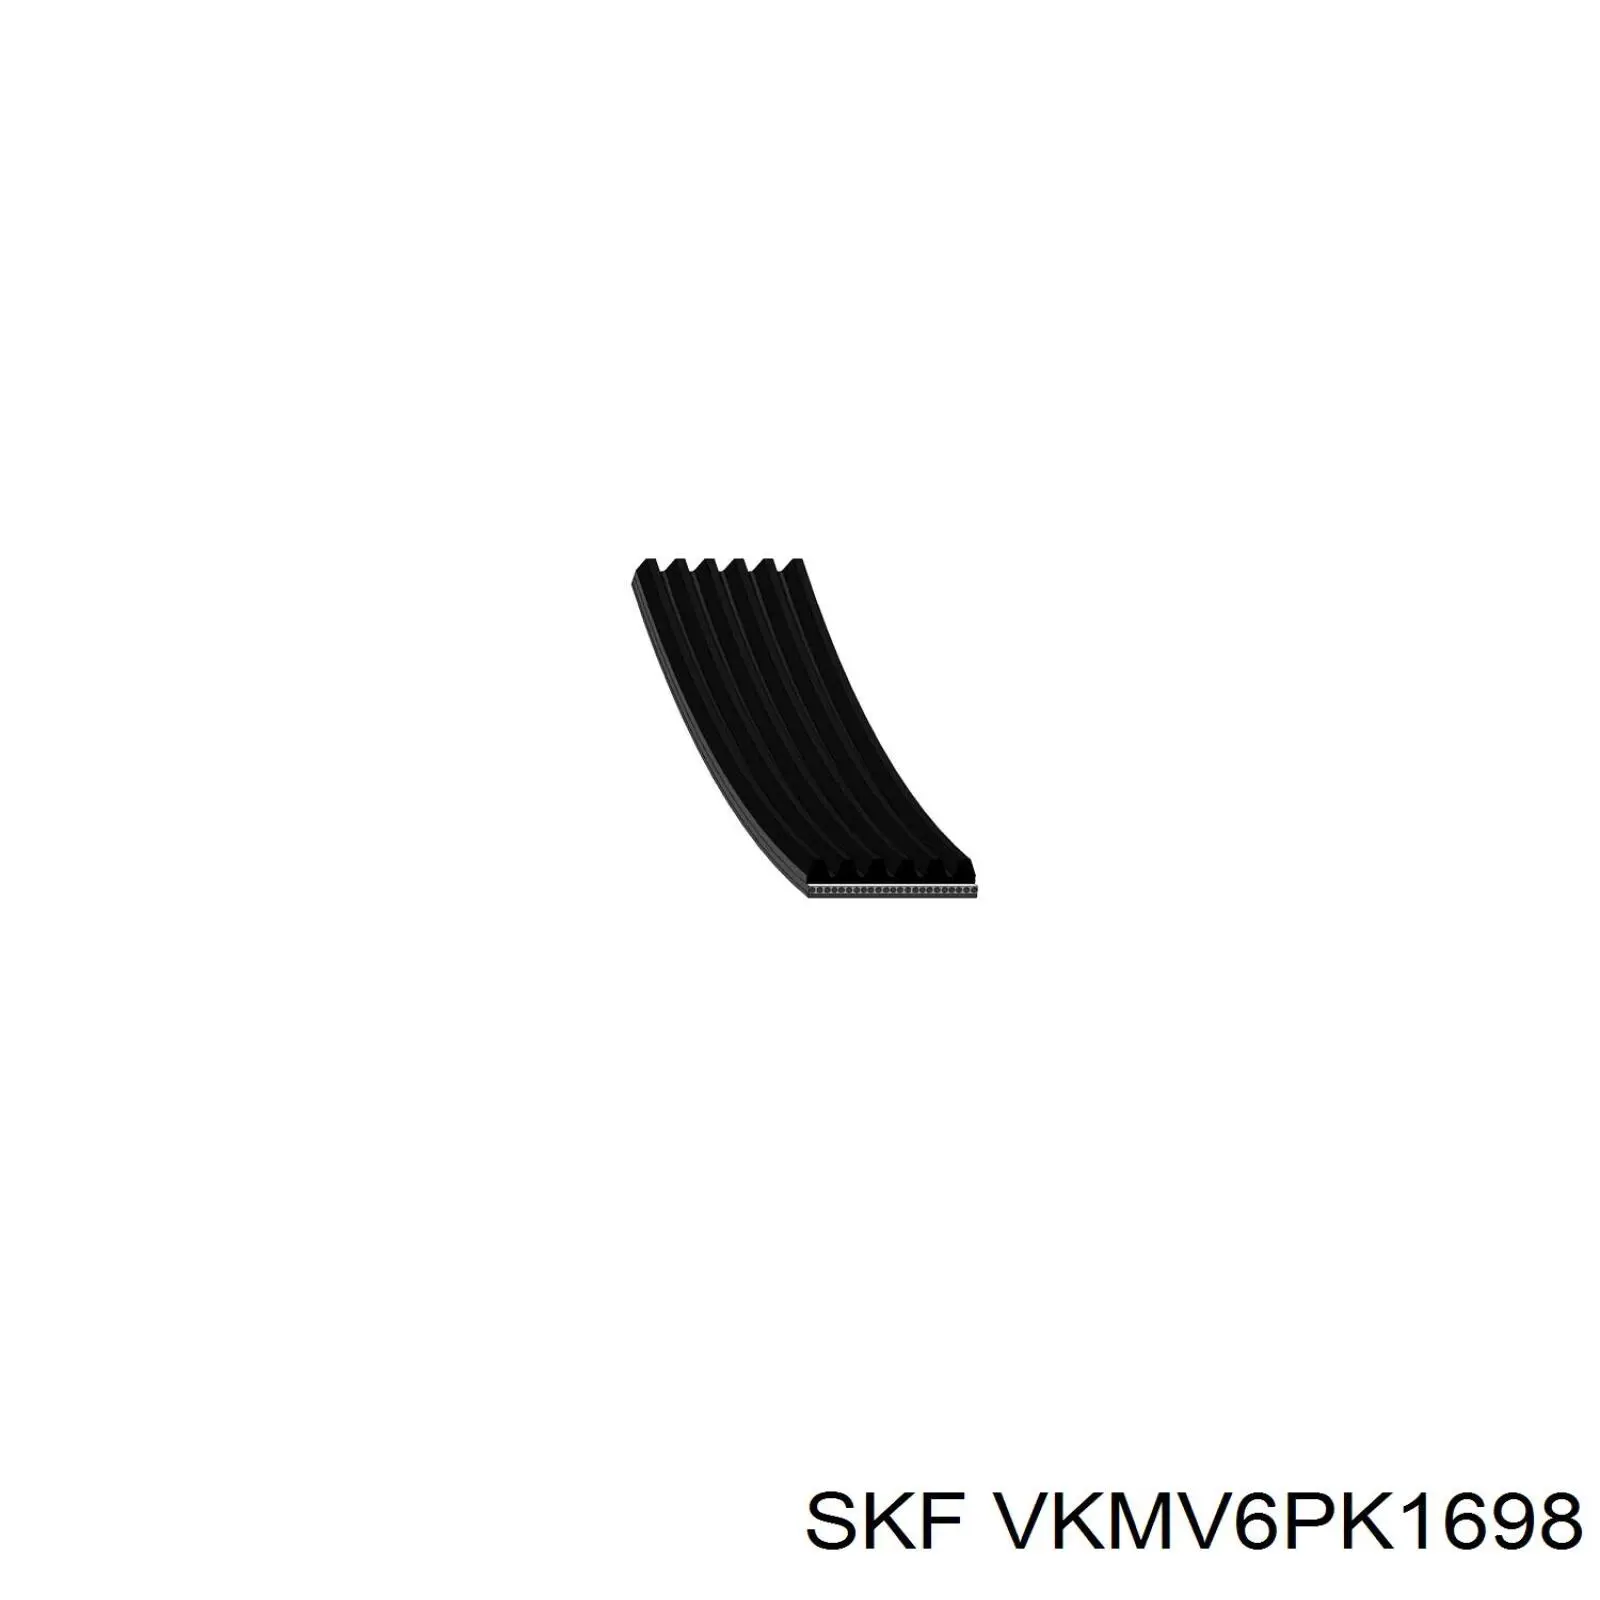 VKMV6PK1698 SKF correa trapezoidal